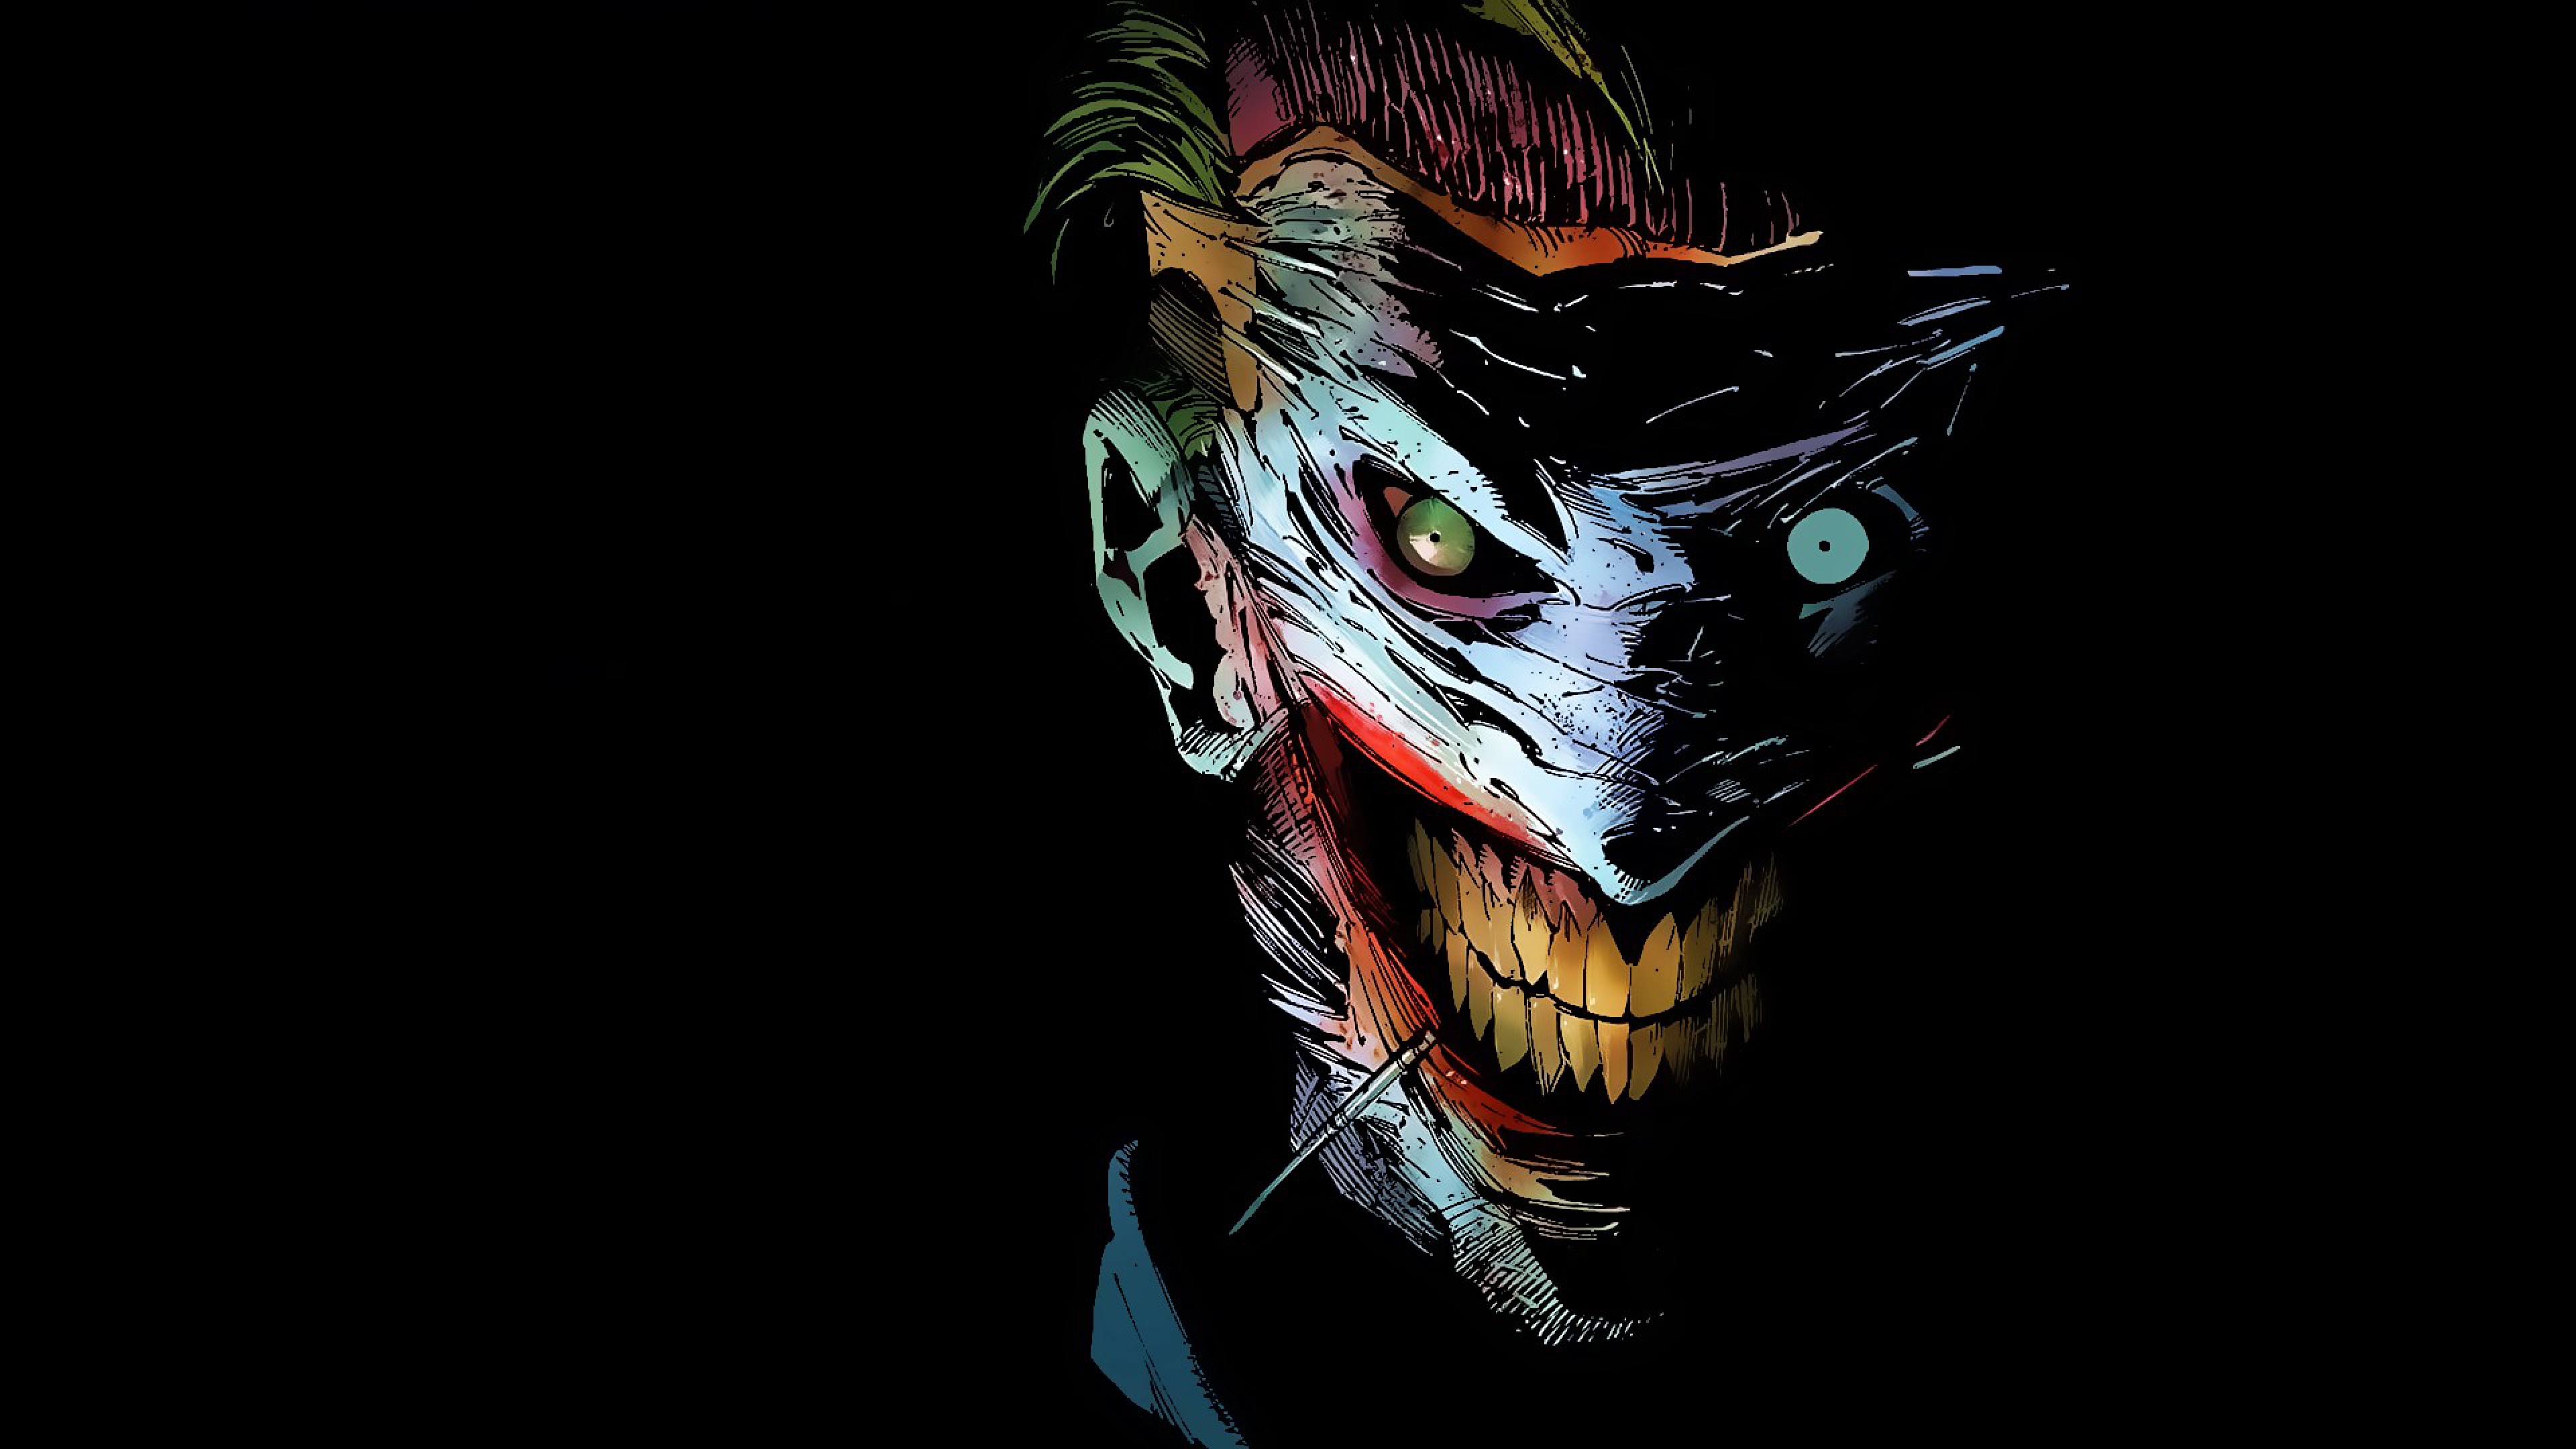 536 Joker HD Wallpapers | Backgrounds - Wallpaper Abyss